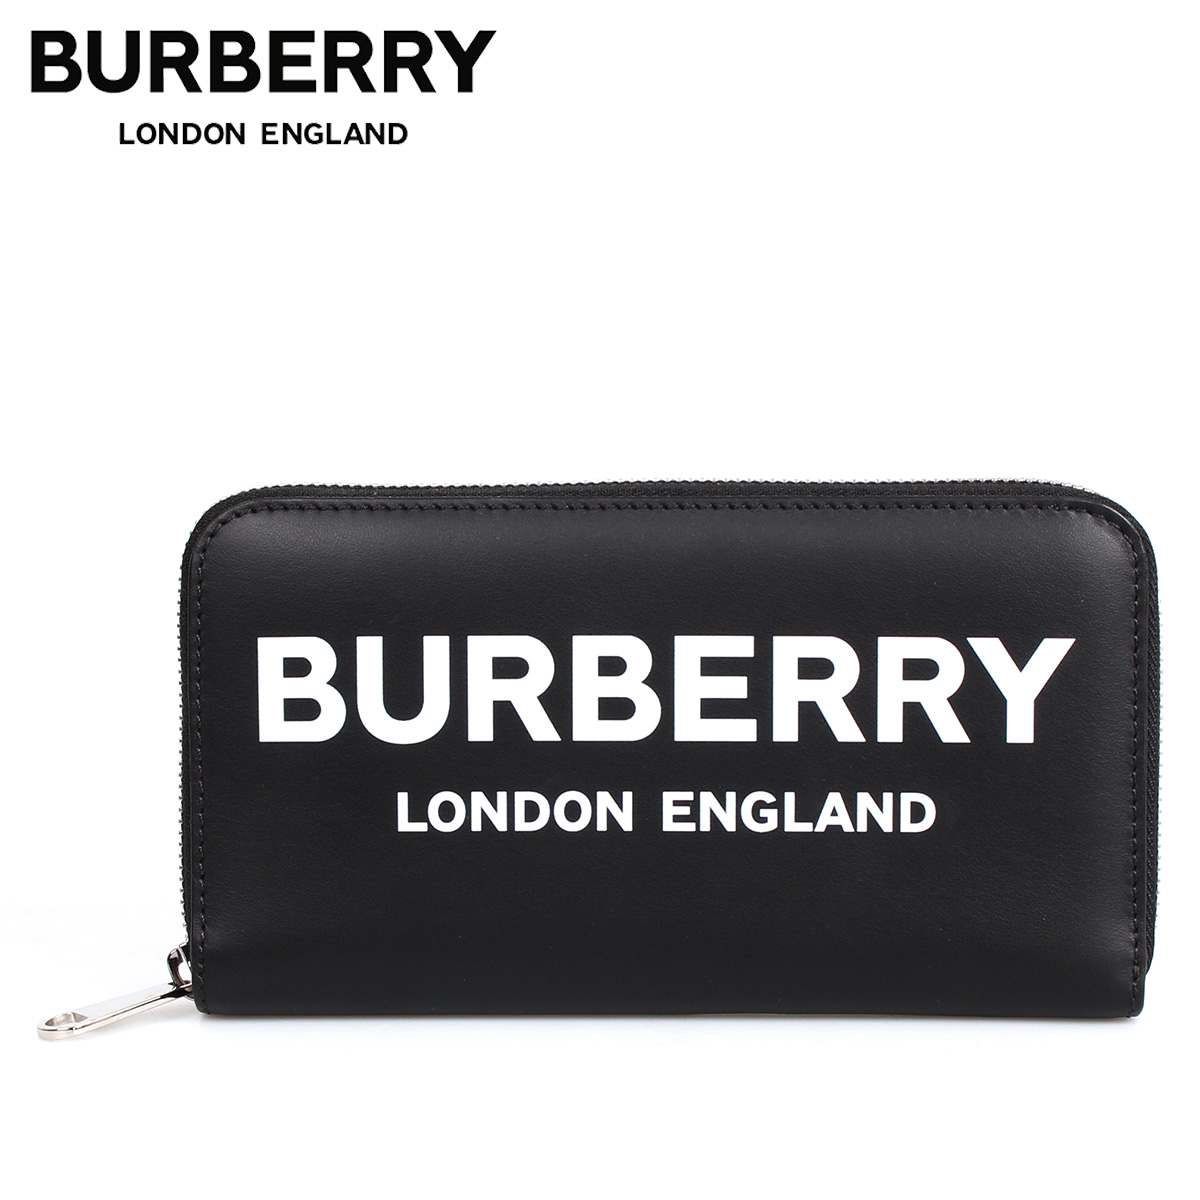 burberry wallet online